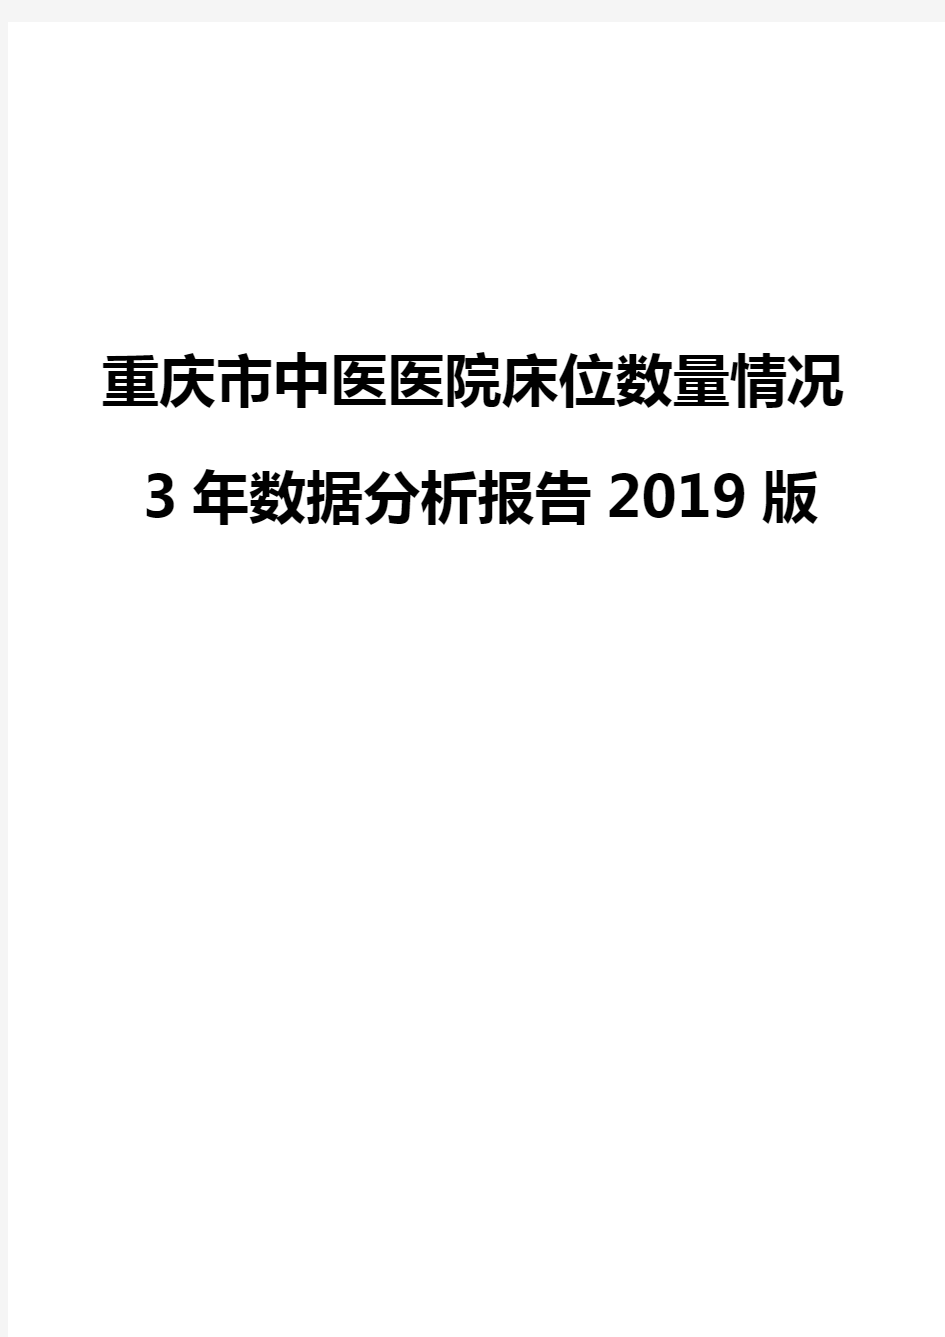 重庆市中医医院床位数量情况3年数据分析报告2019版